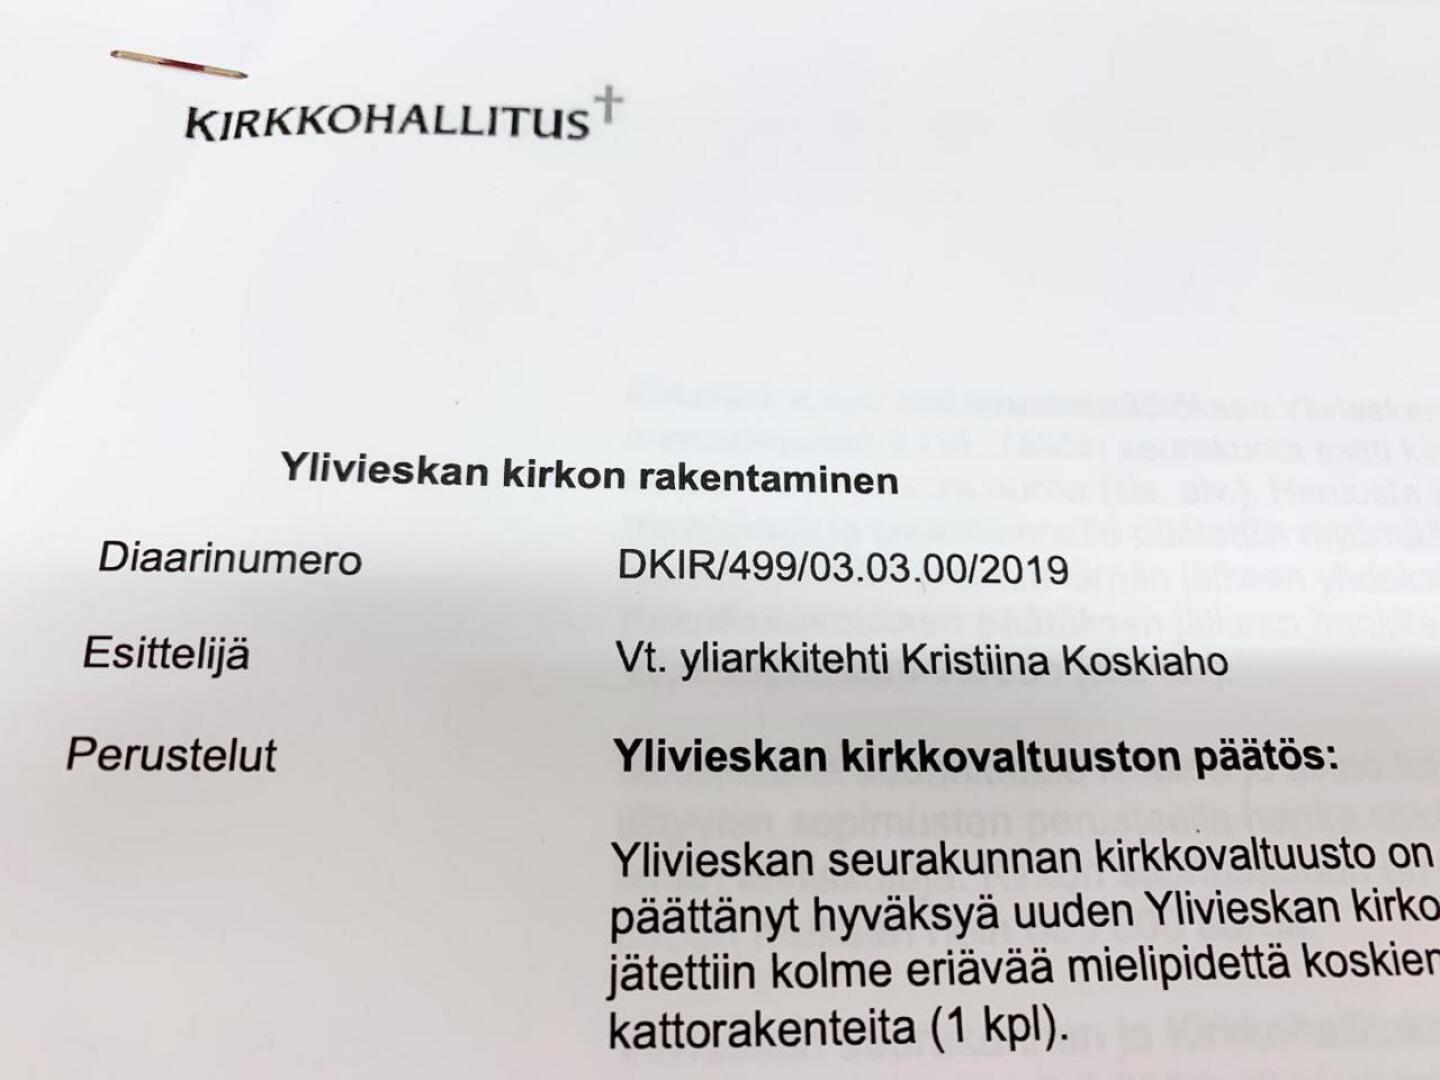 Kirkkohallituksen täysistunnossa esittelijänä toimi kirkkohallituksen vt. yliarkkitehti Kristiina Koskiaho.